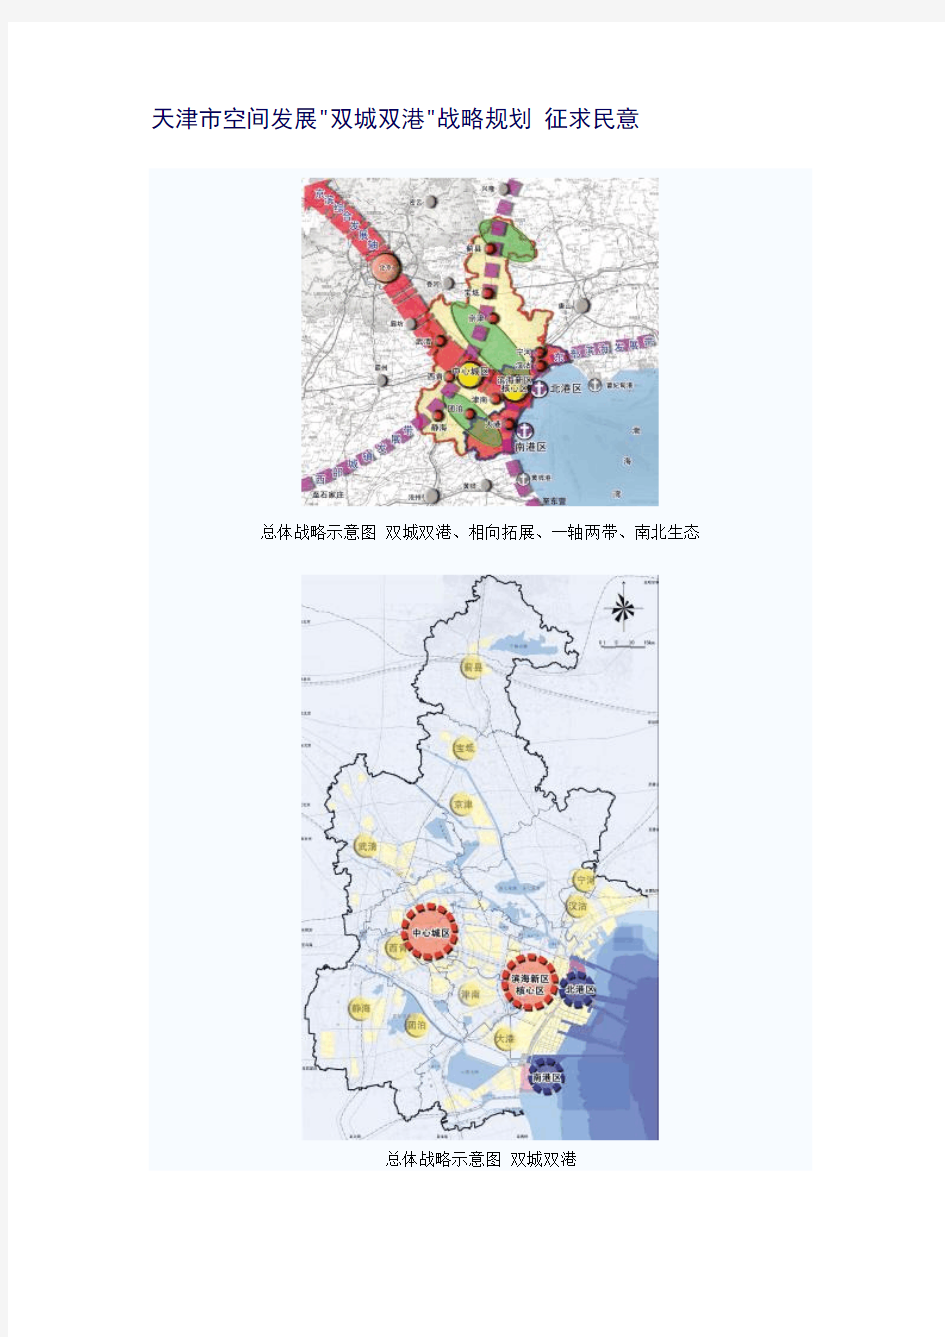 【发展战略】天津市空间发展双城双港战略规划 征求民意